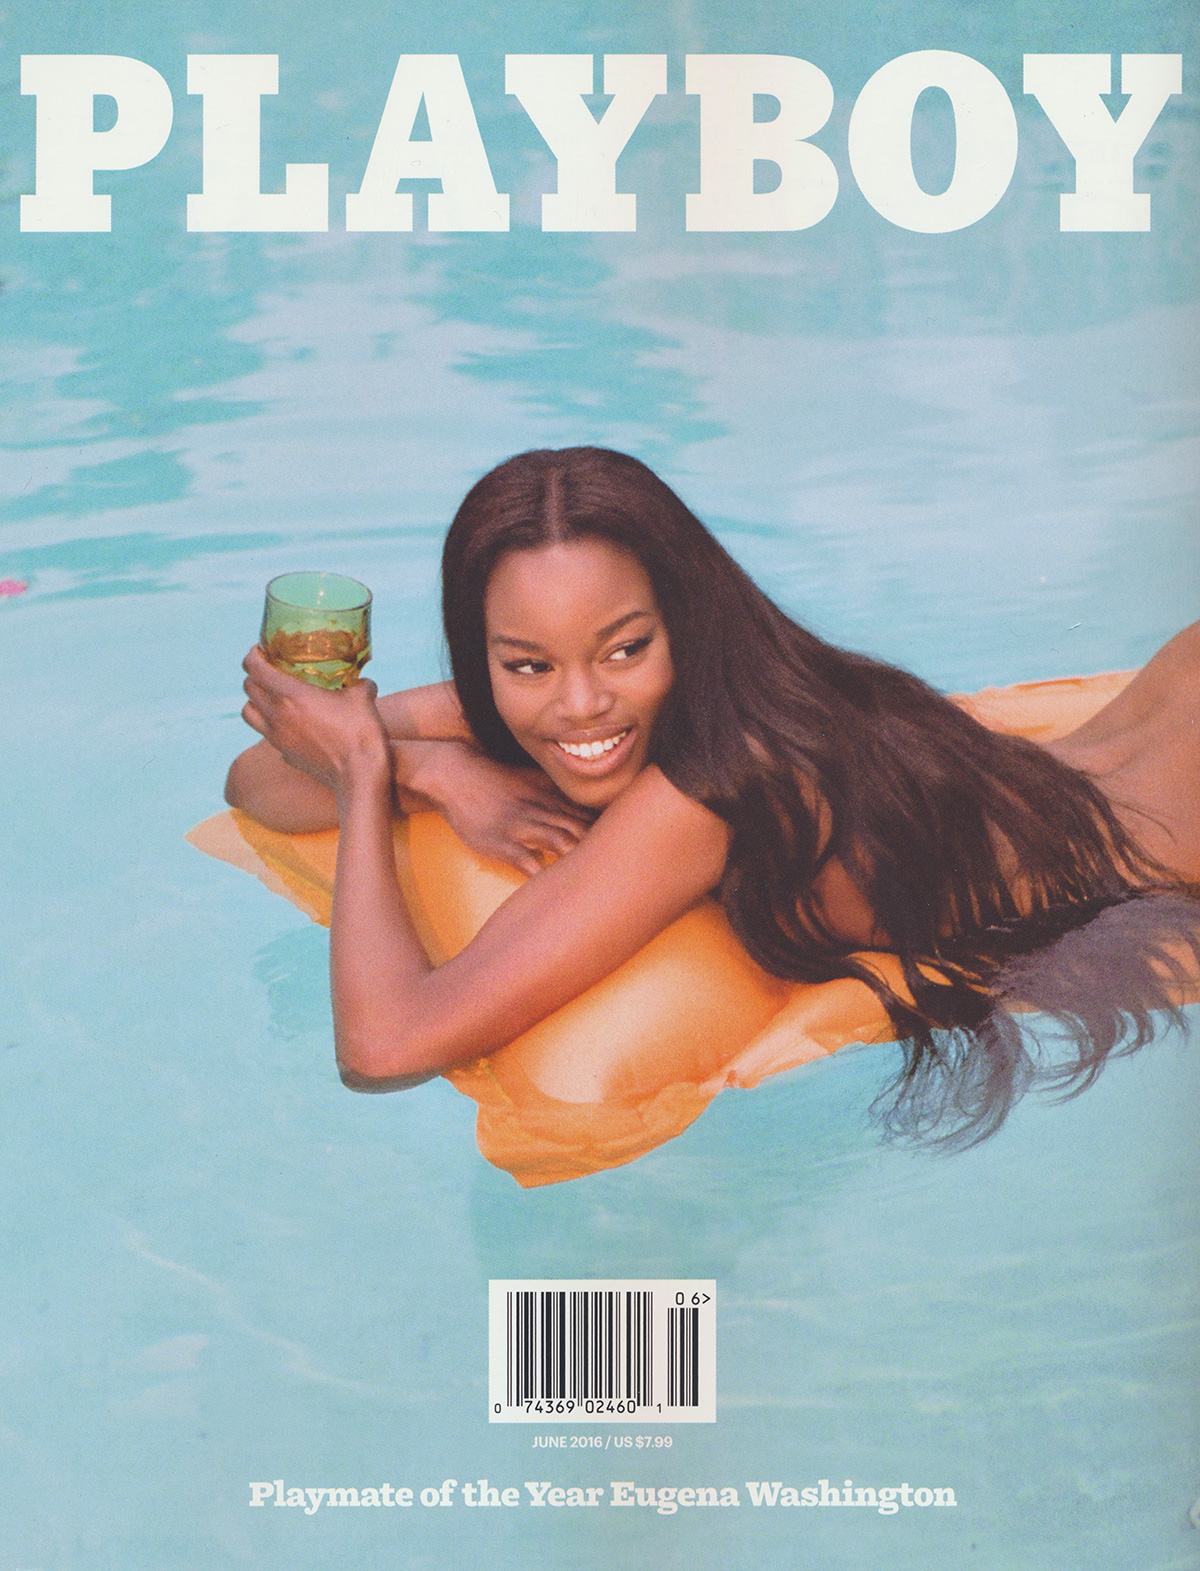 Playboy June 2016 magazine back issue Playboy (USA) magizine back copy 